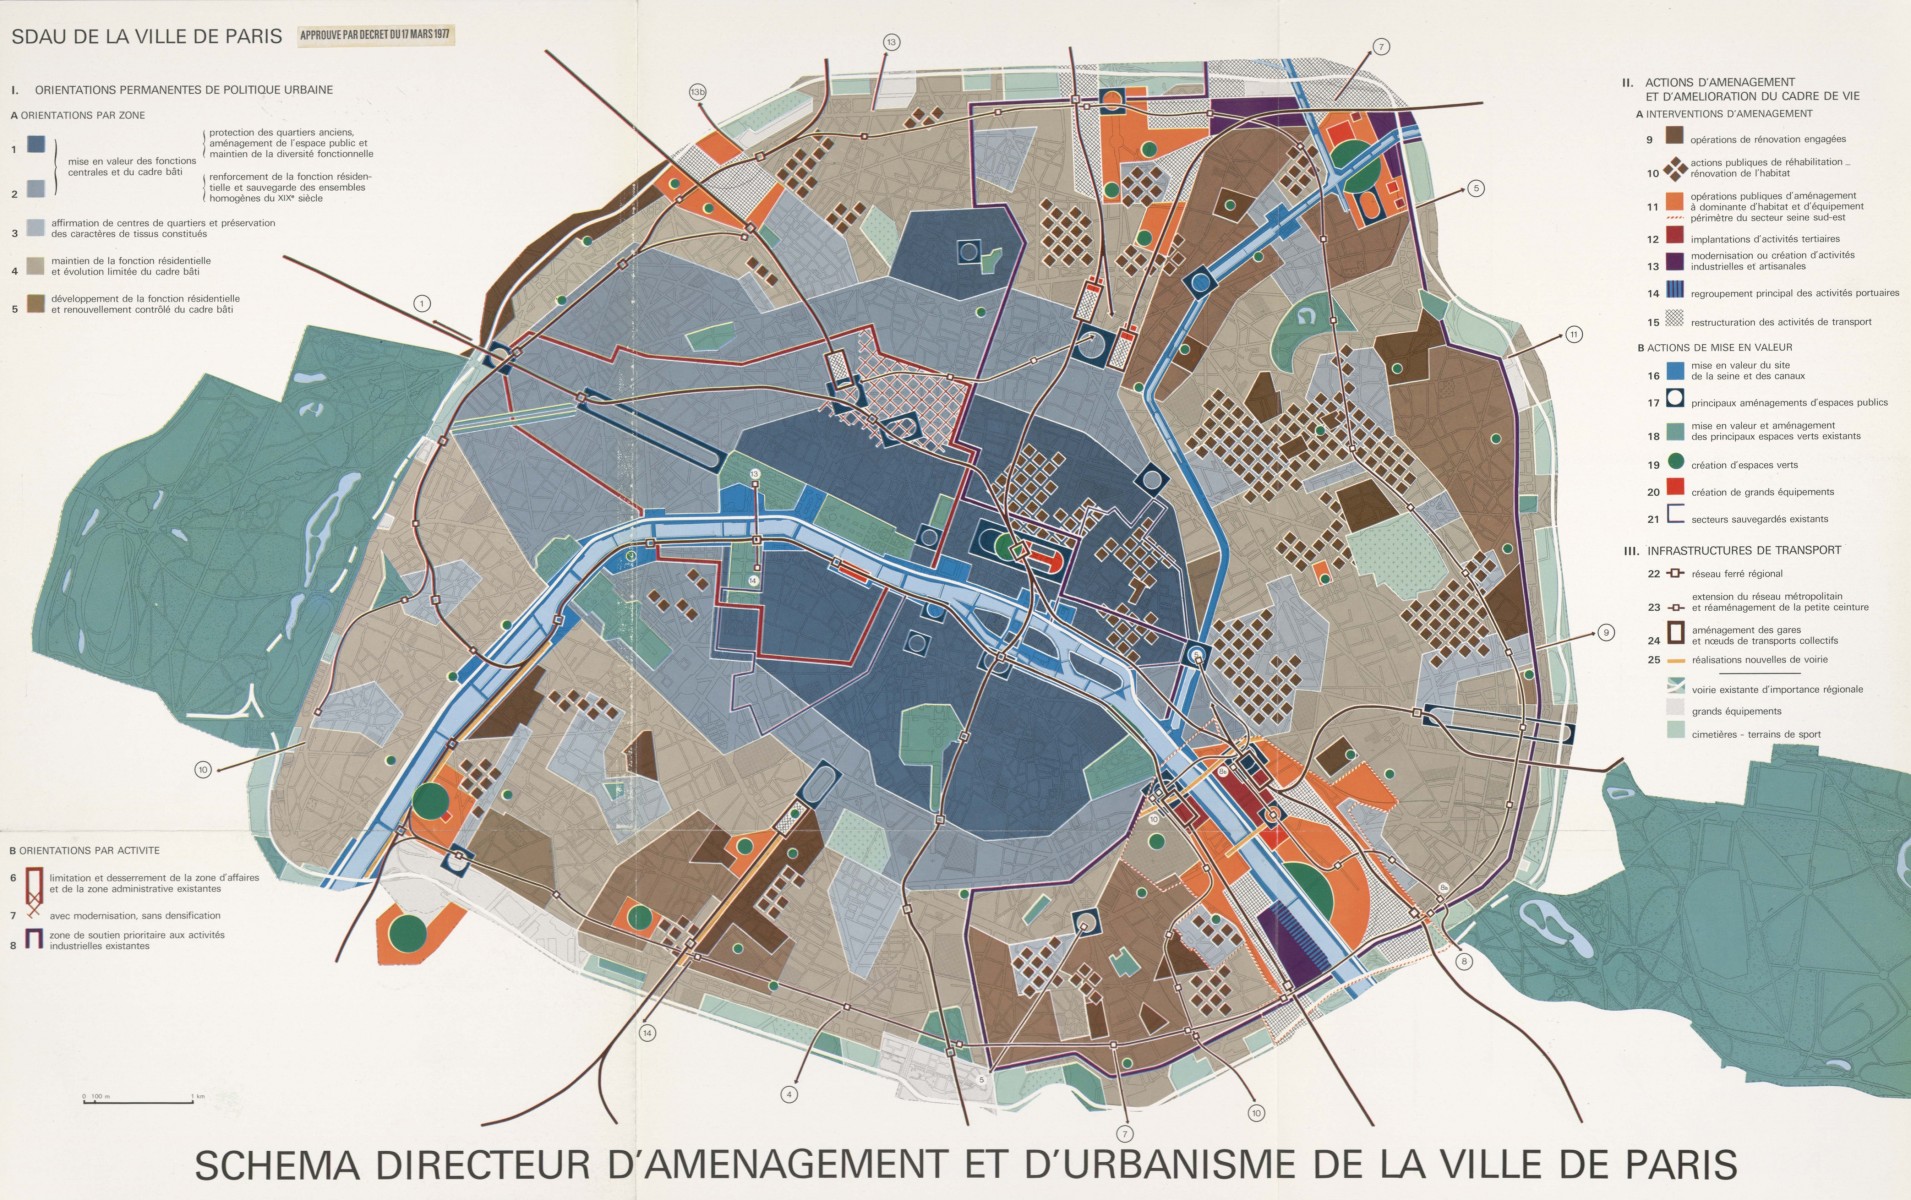 Schéma directeur d'aménagement et d'urbanisme de la Ville de Paris approuvé par décret du 17 mars 1977